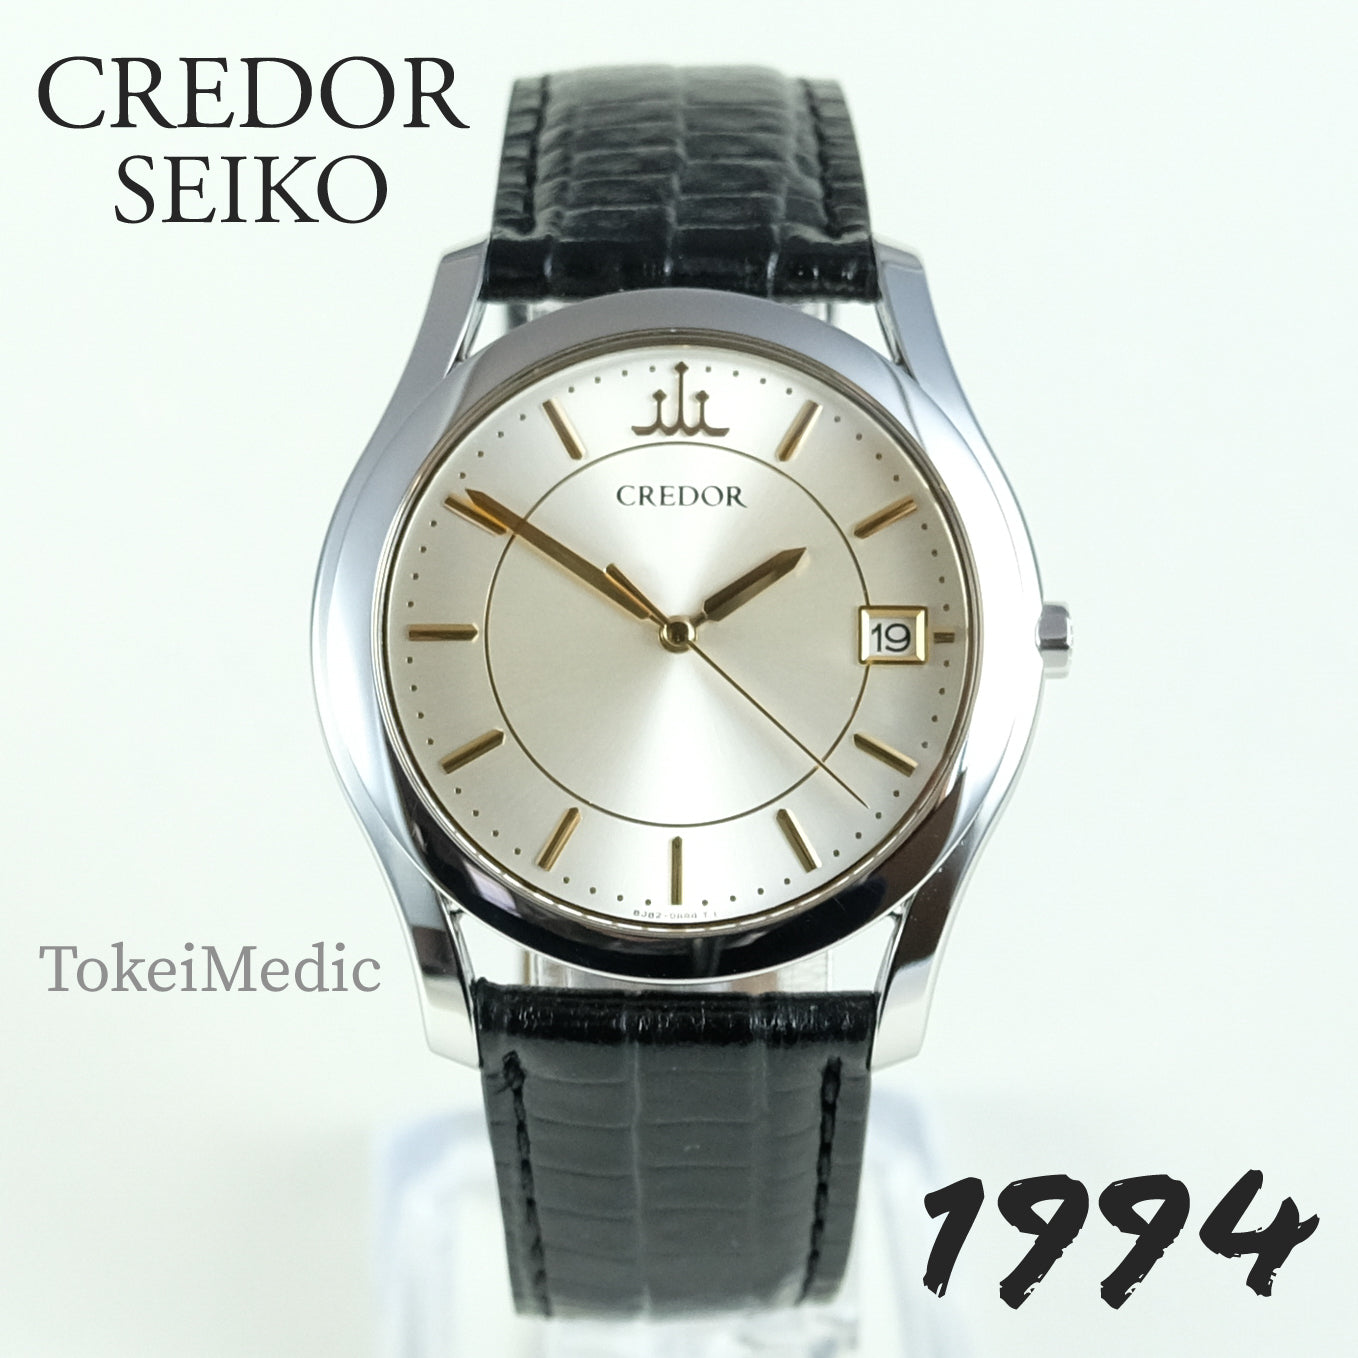 1994 Credor Seiko 8J82-0AB0